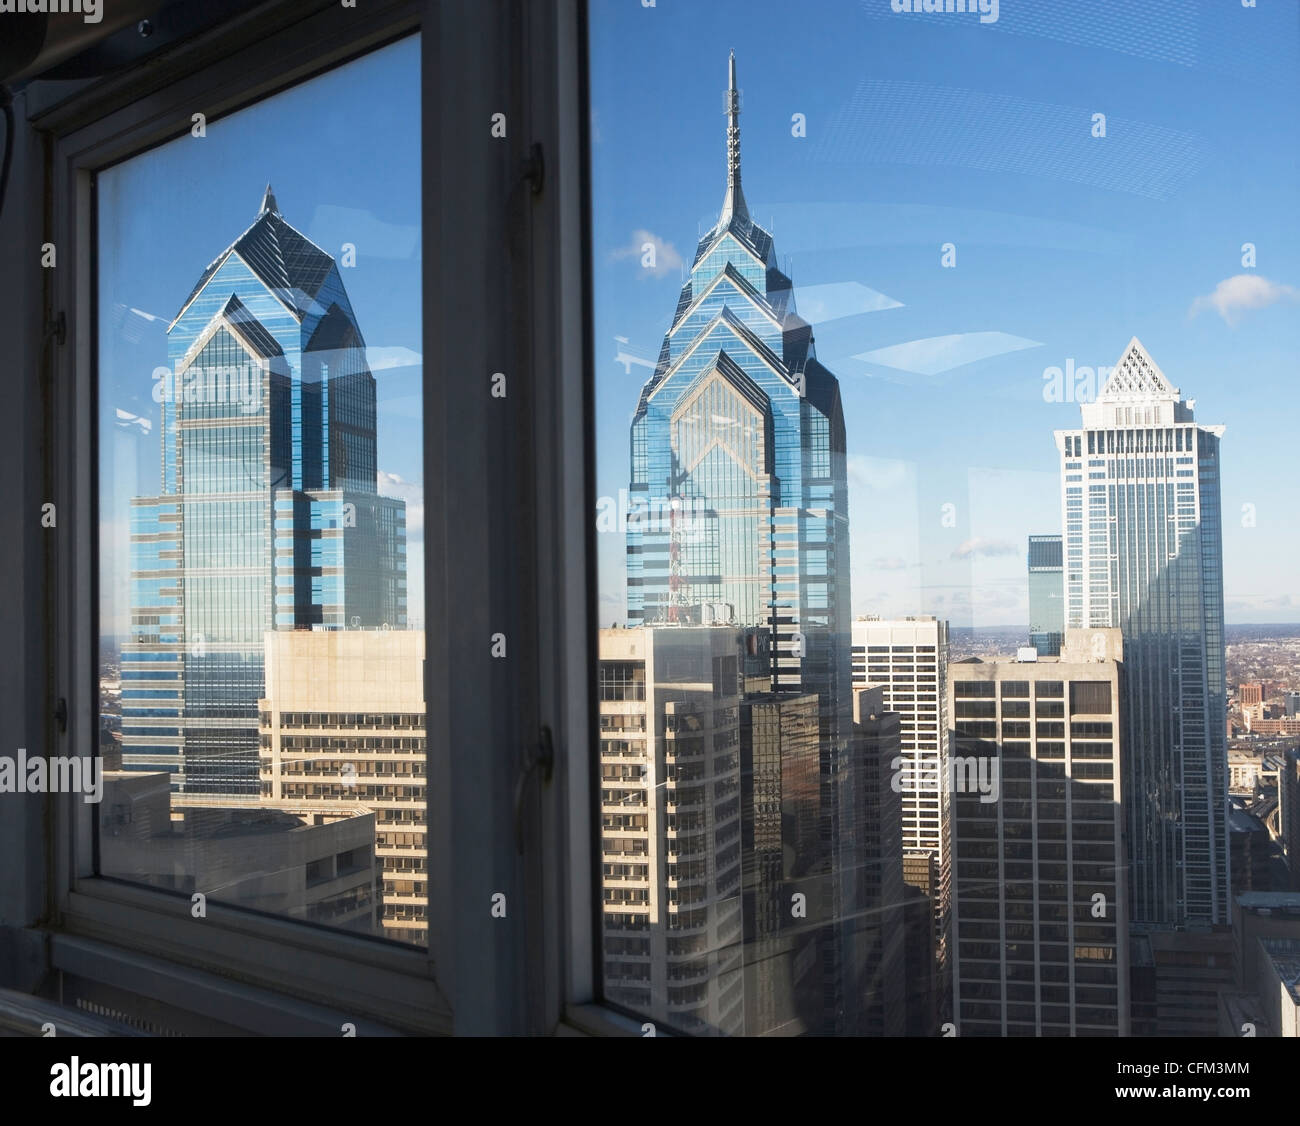 USA, Pennsylvania, Philadelphia, view through window on skyscrapers Stock Photo